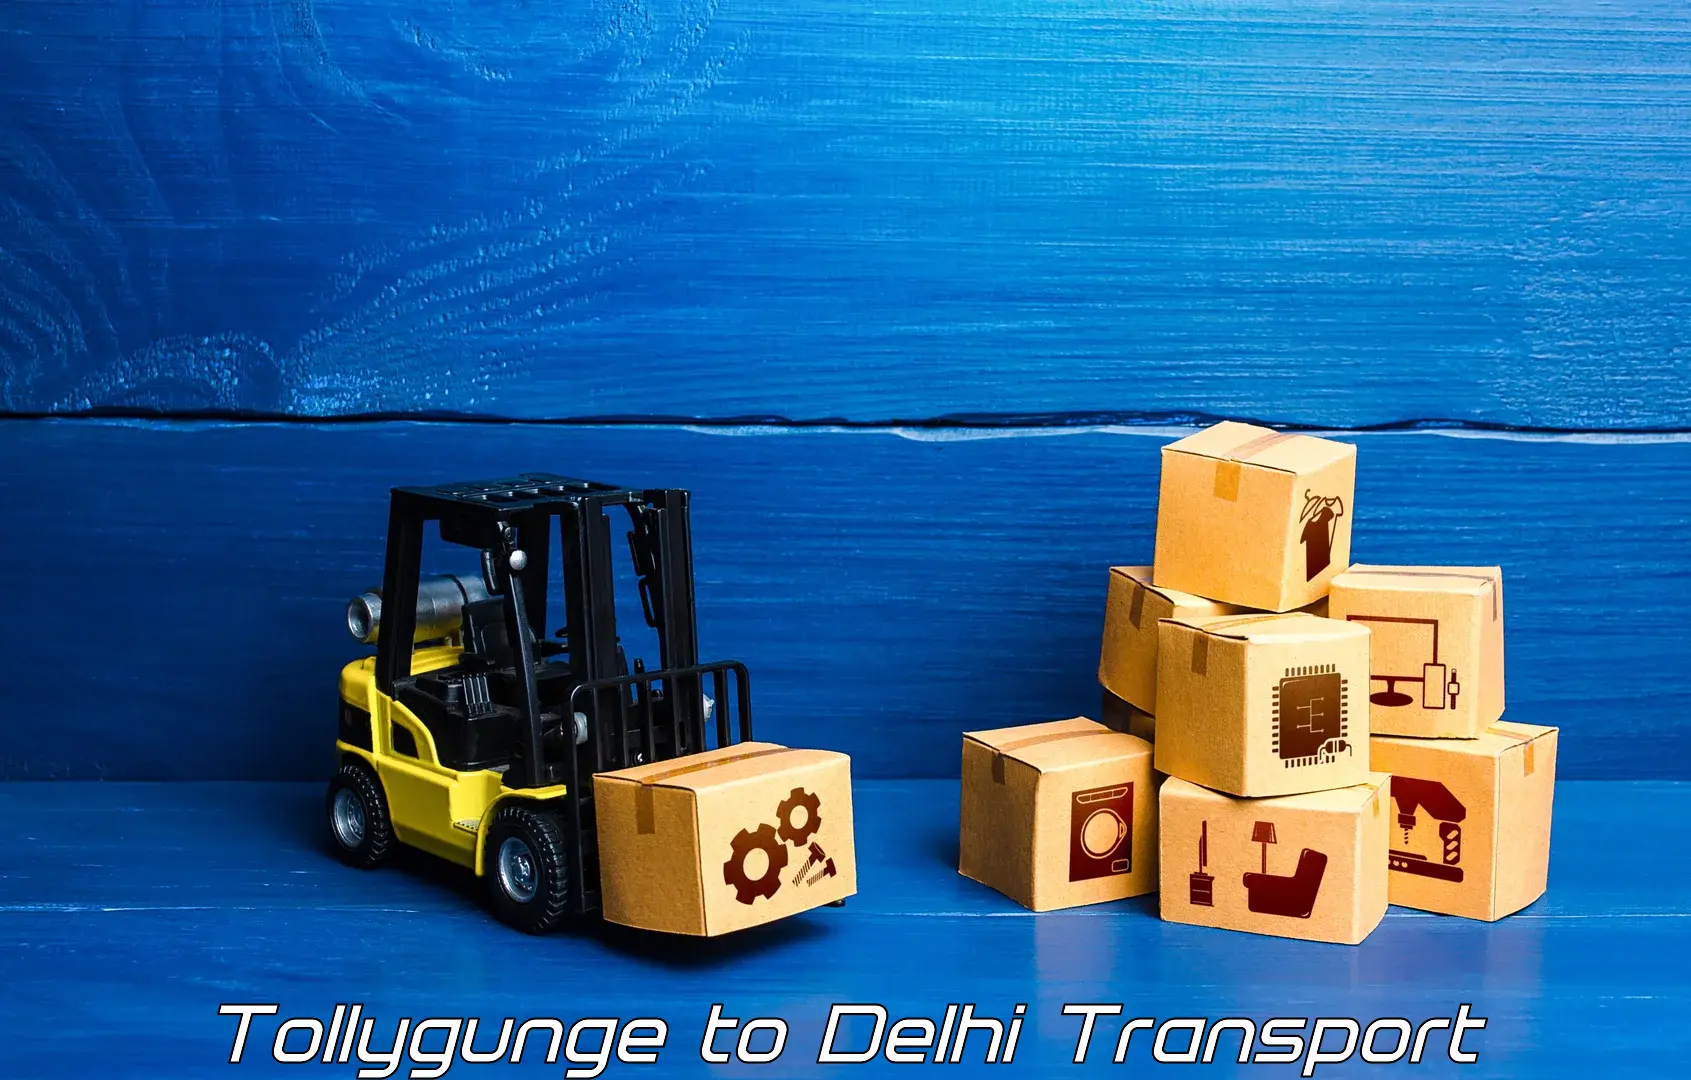 Lorry transport service Tollygunge to Ashok Vihar